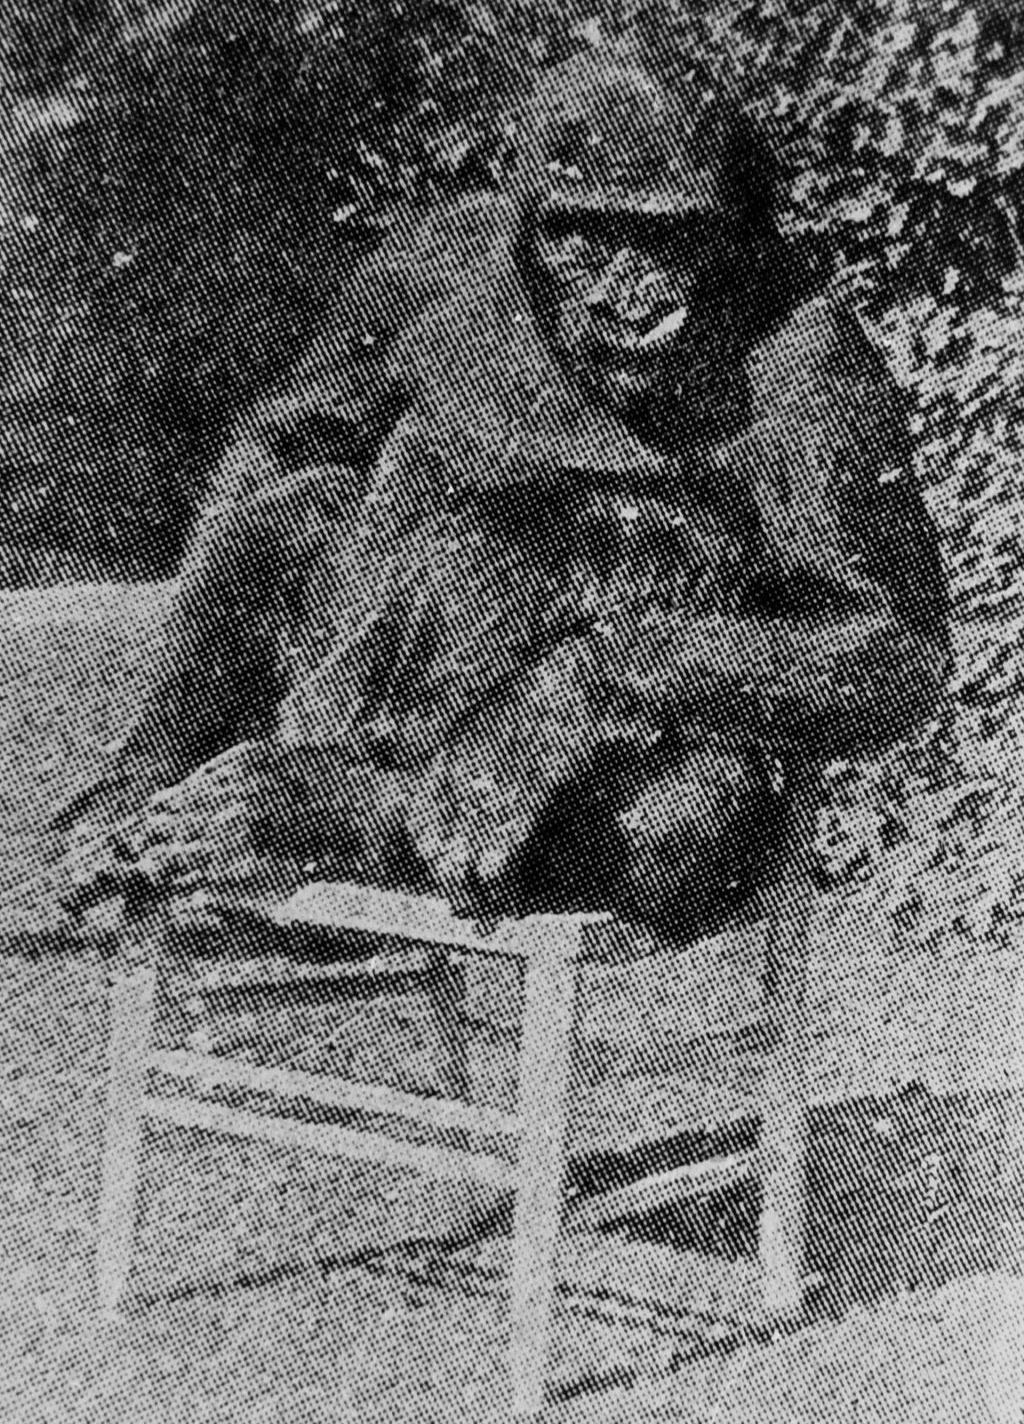 O gorila quase humano que bebia ch e que frequentou a escola